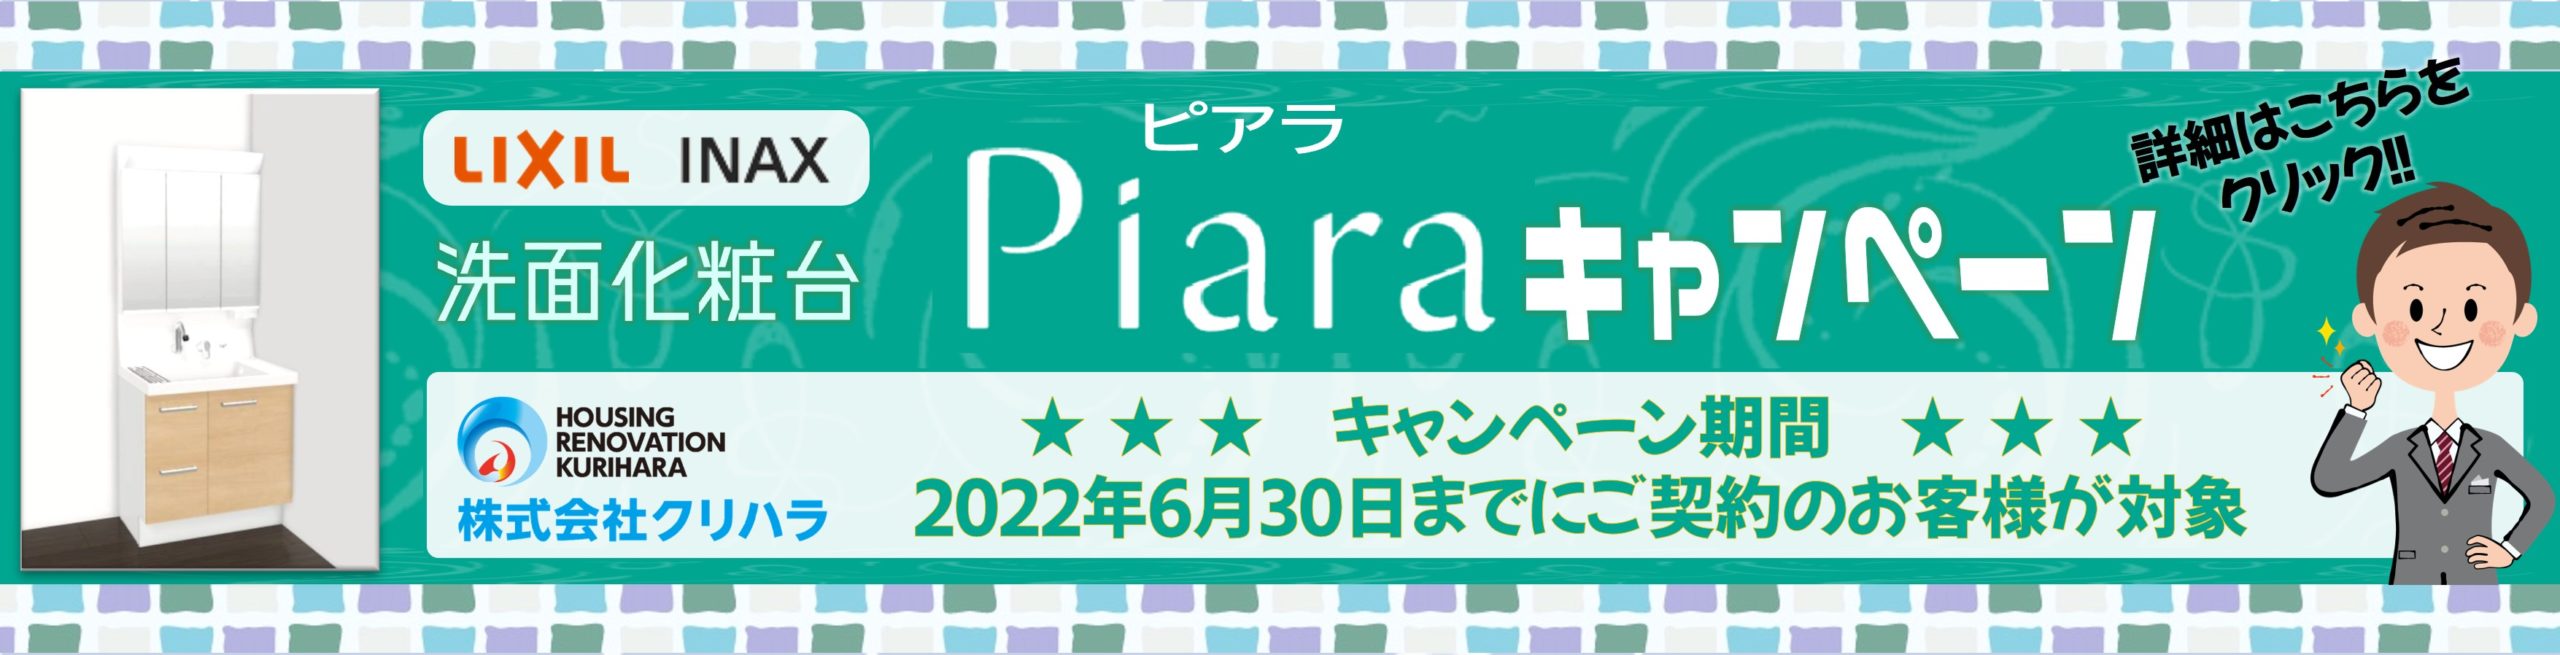 洗面化粧台 Piara -ピアラ- キャンペーン